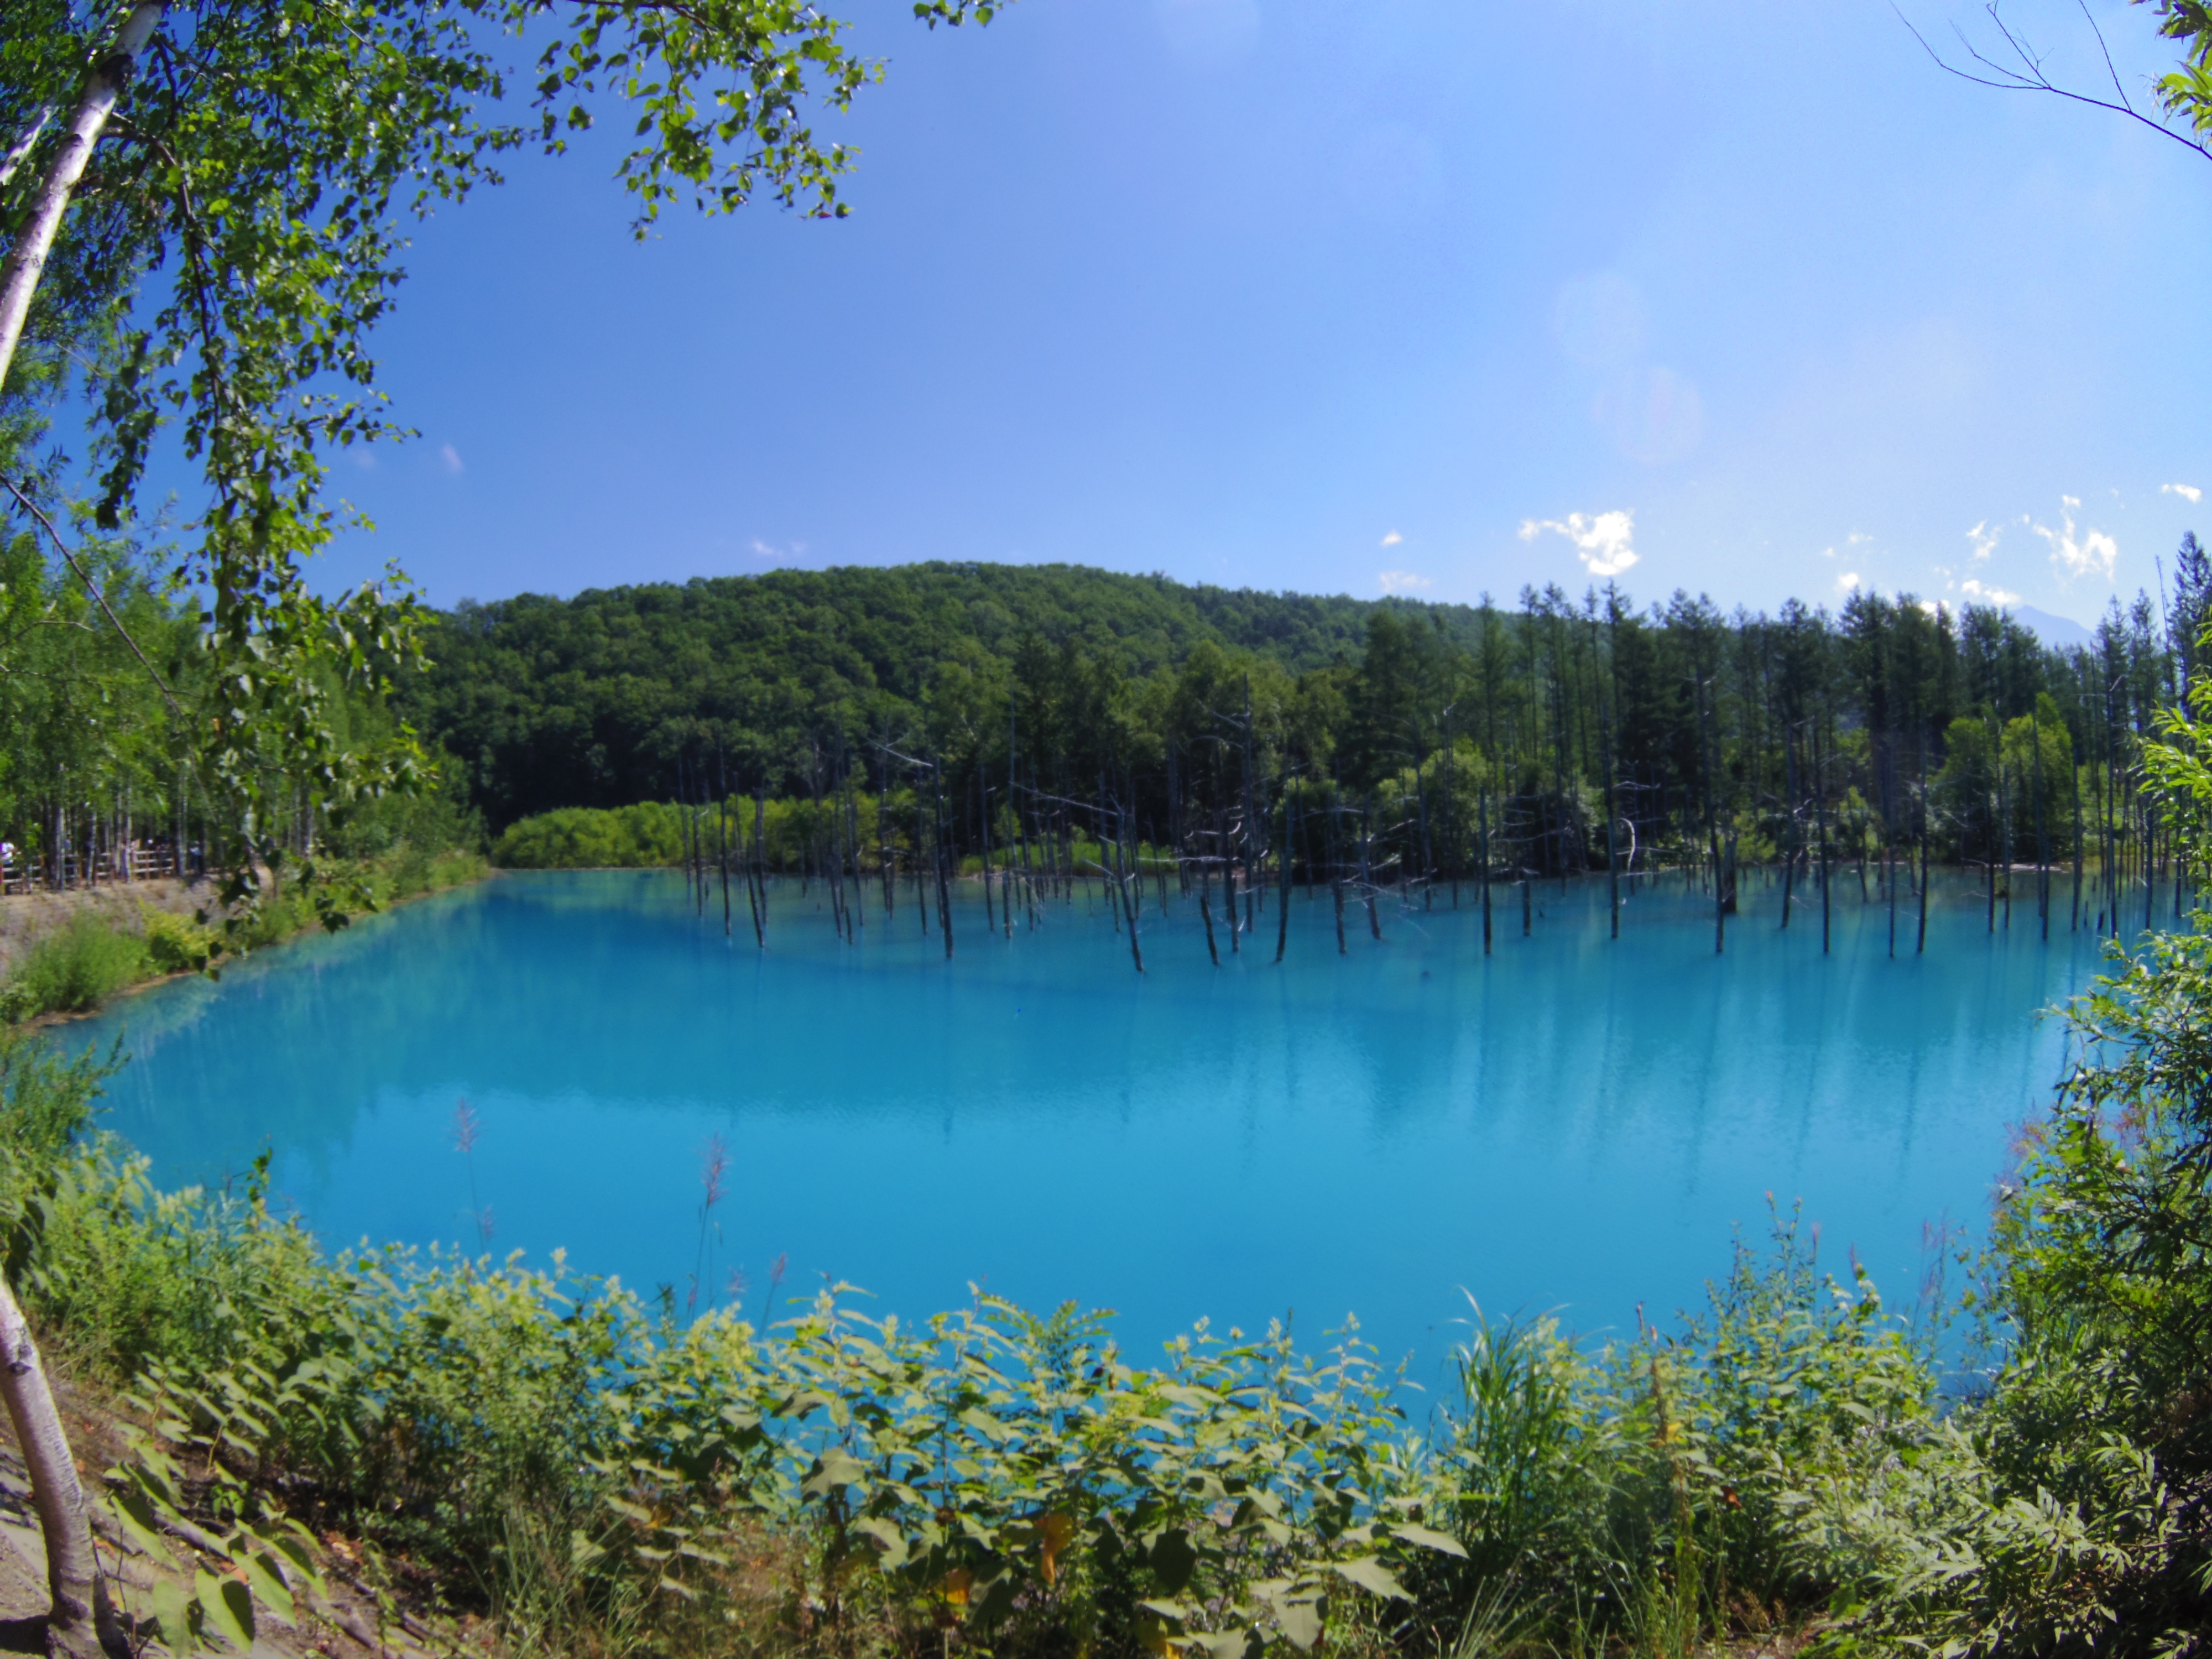 美瑛の青い池